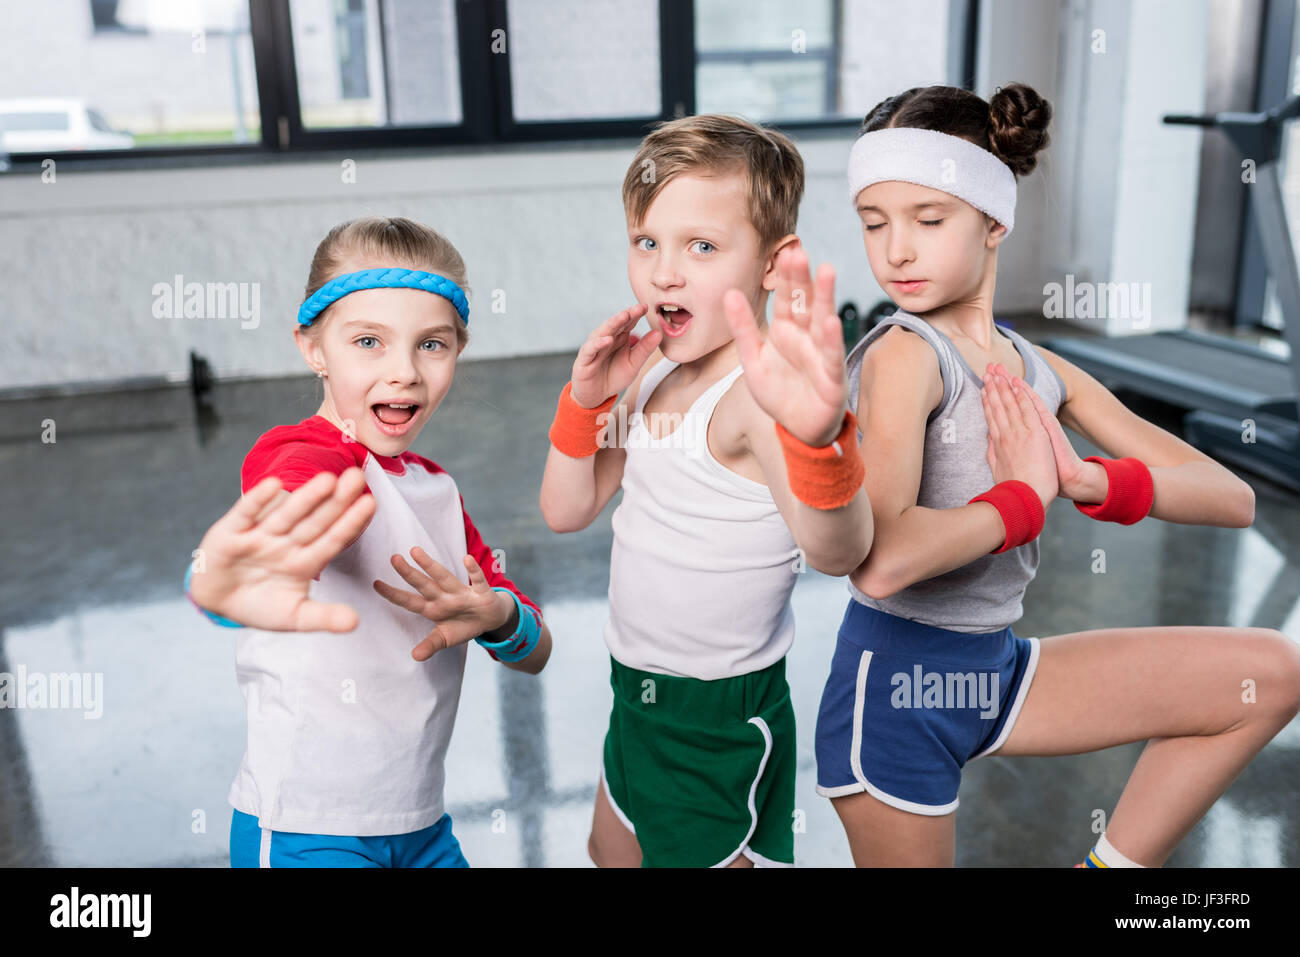 Gruppe von kleinen Kindern in Sportbekleidung ausüben und posiert auf  Kamera im Fitness-Studio, Kinder-Sport-Schule-Konzept Stockfotografie -  Alamy